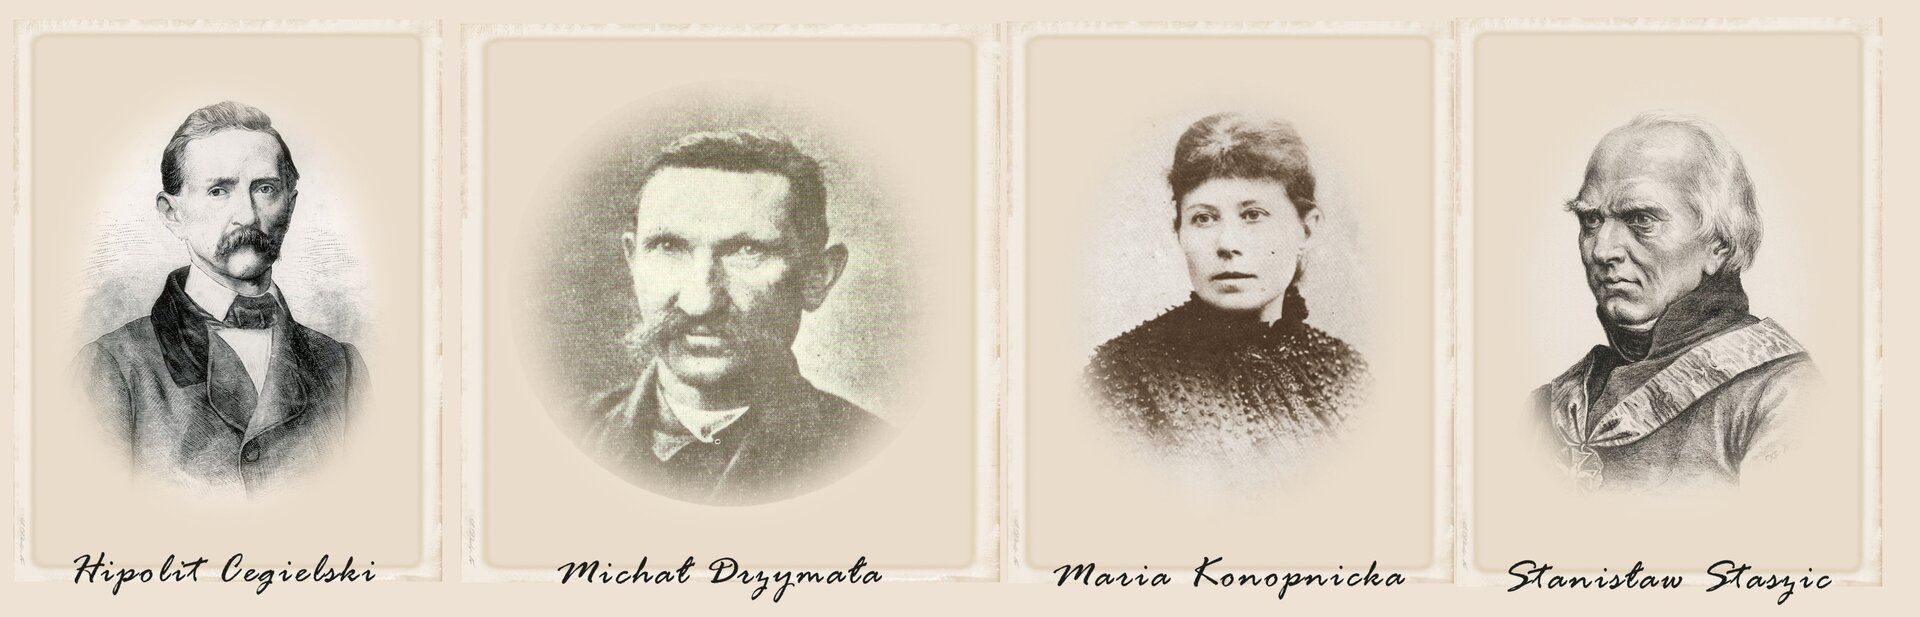 Przykładowe portrety Polaków, którzy mimo działań państw zaborczych, potrafili odnieść sukces życiowy. Od lewej: Hipolit Cegielski, Michał Drzymała, Maria Konopnicka, Stanisław Staszic.